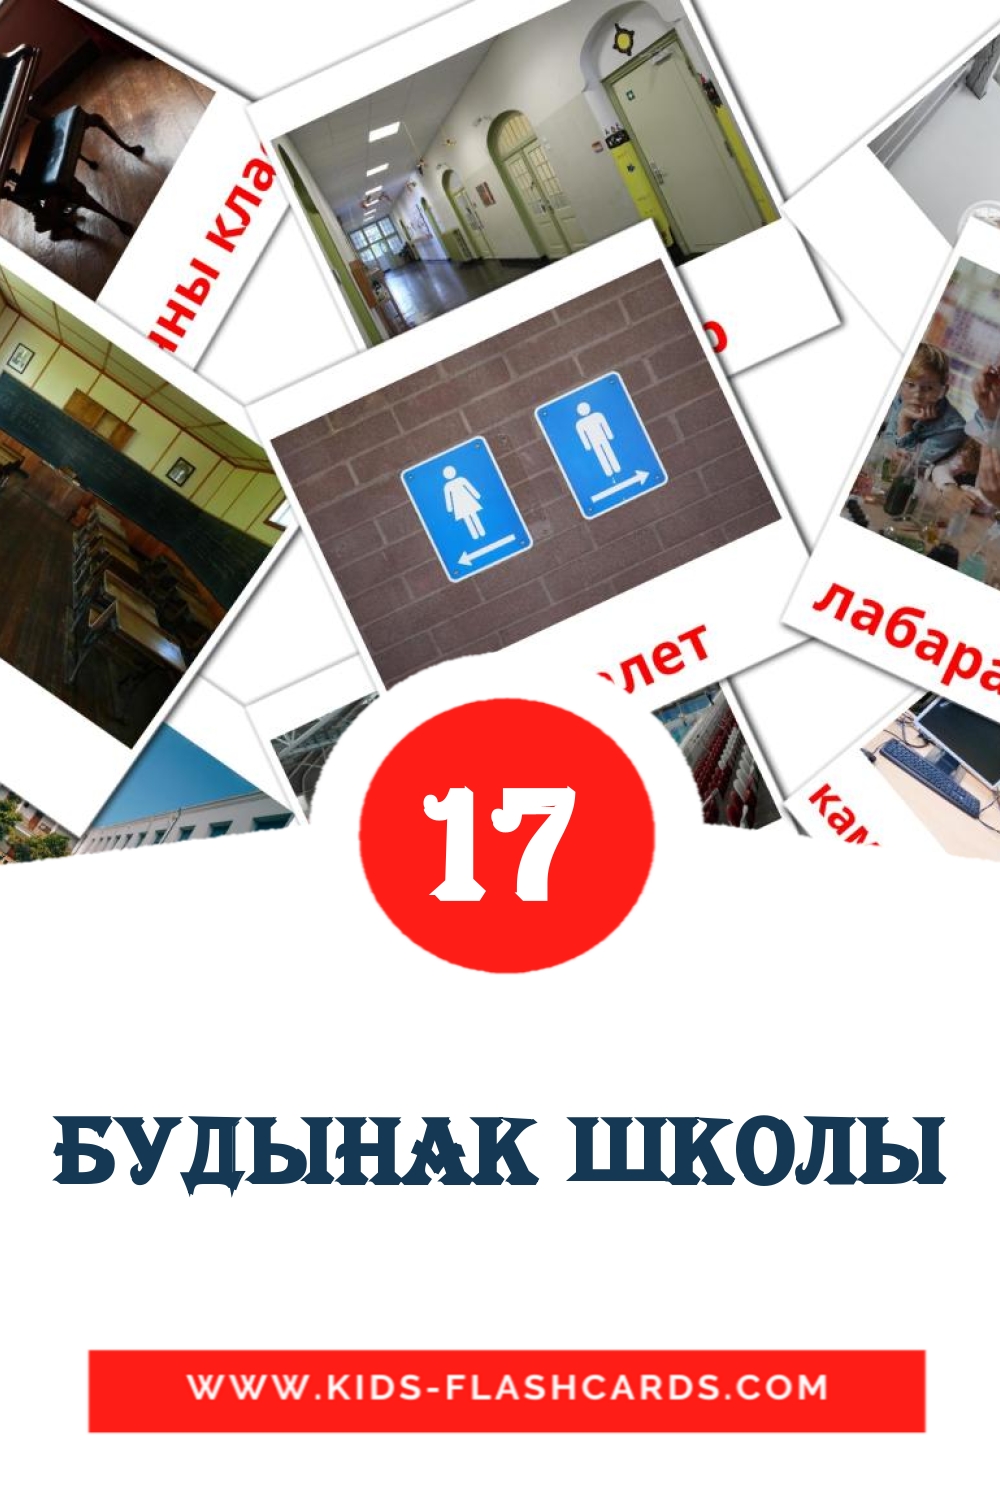 17 tarjetas didacticas de Будынак школы para el jardín de infancia en bielorruso